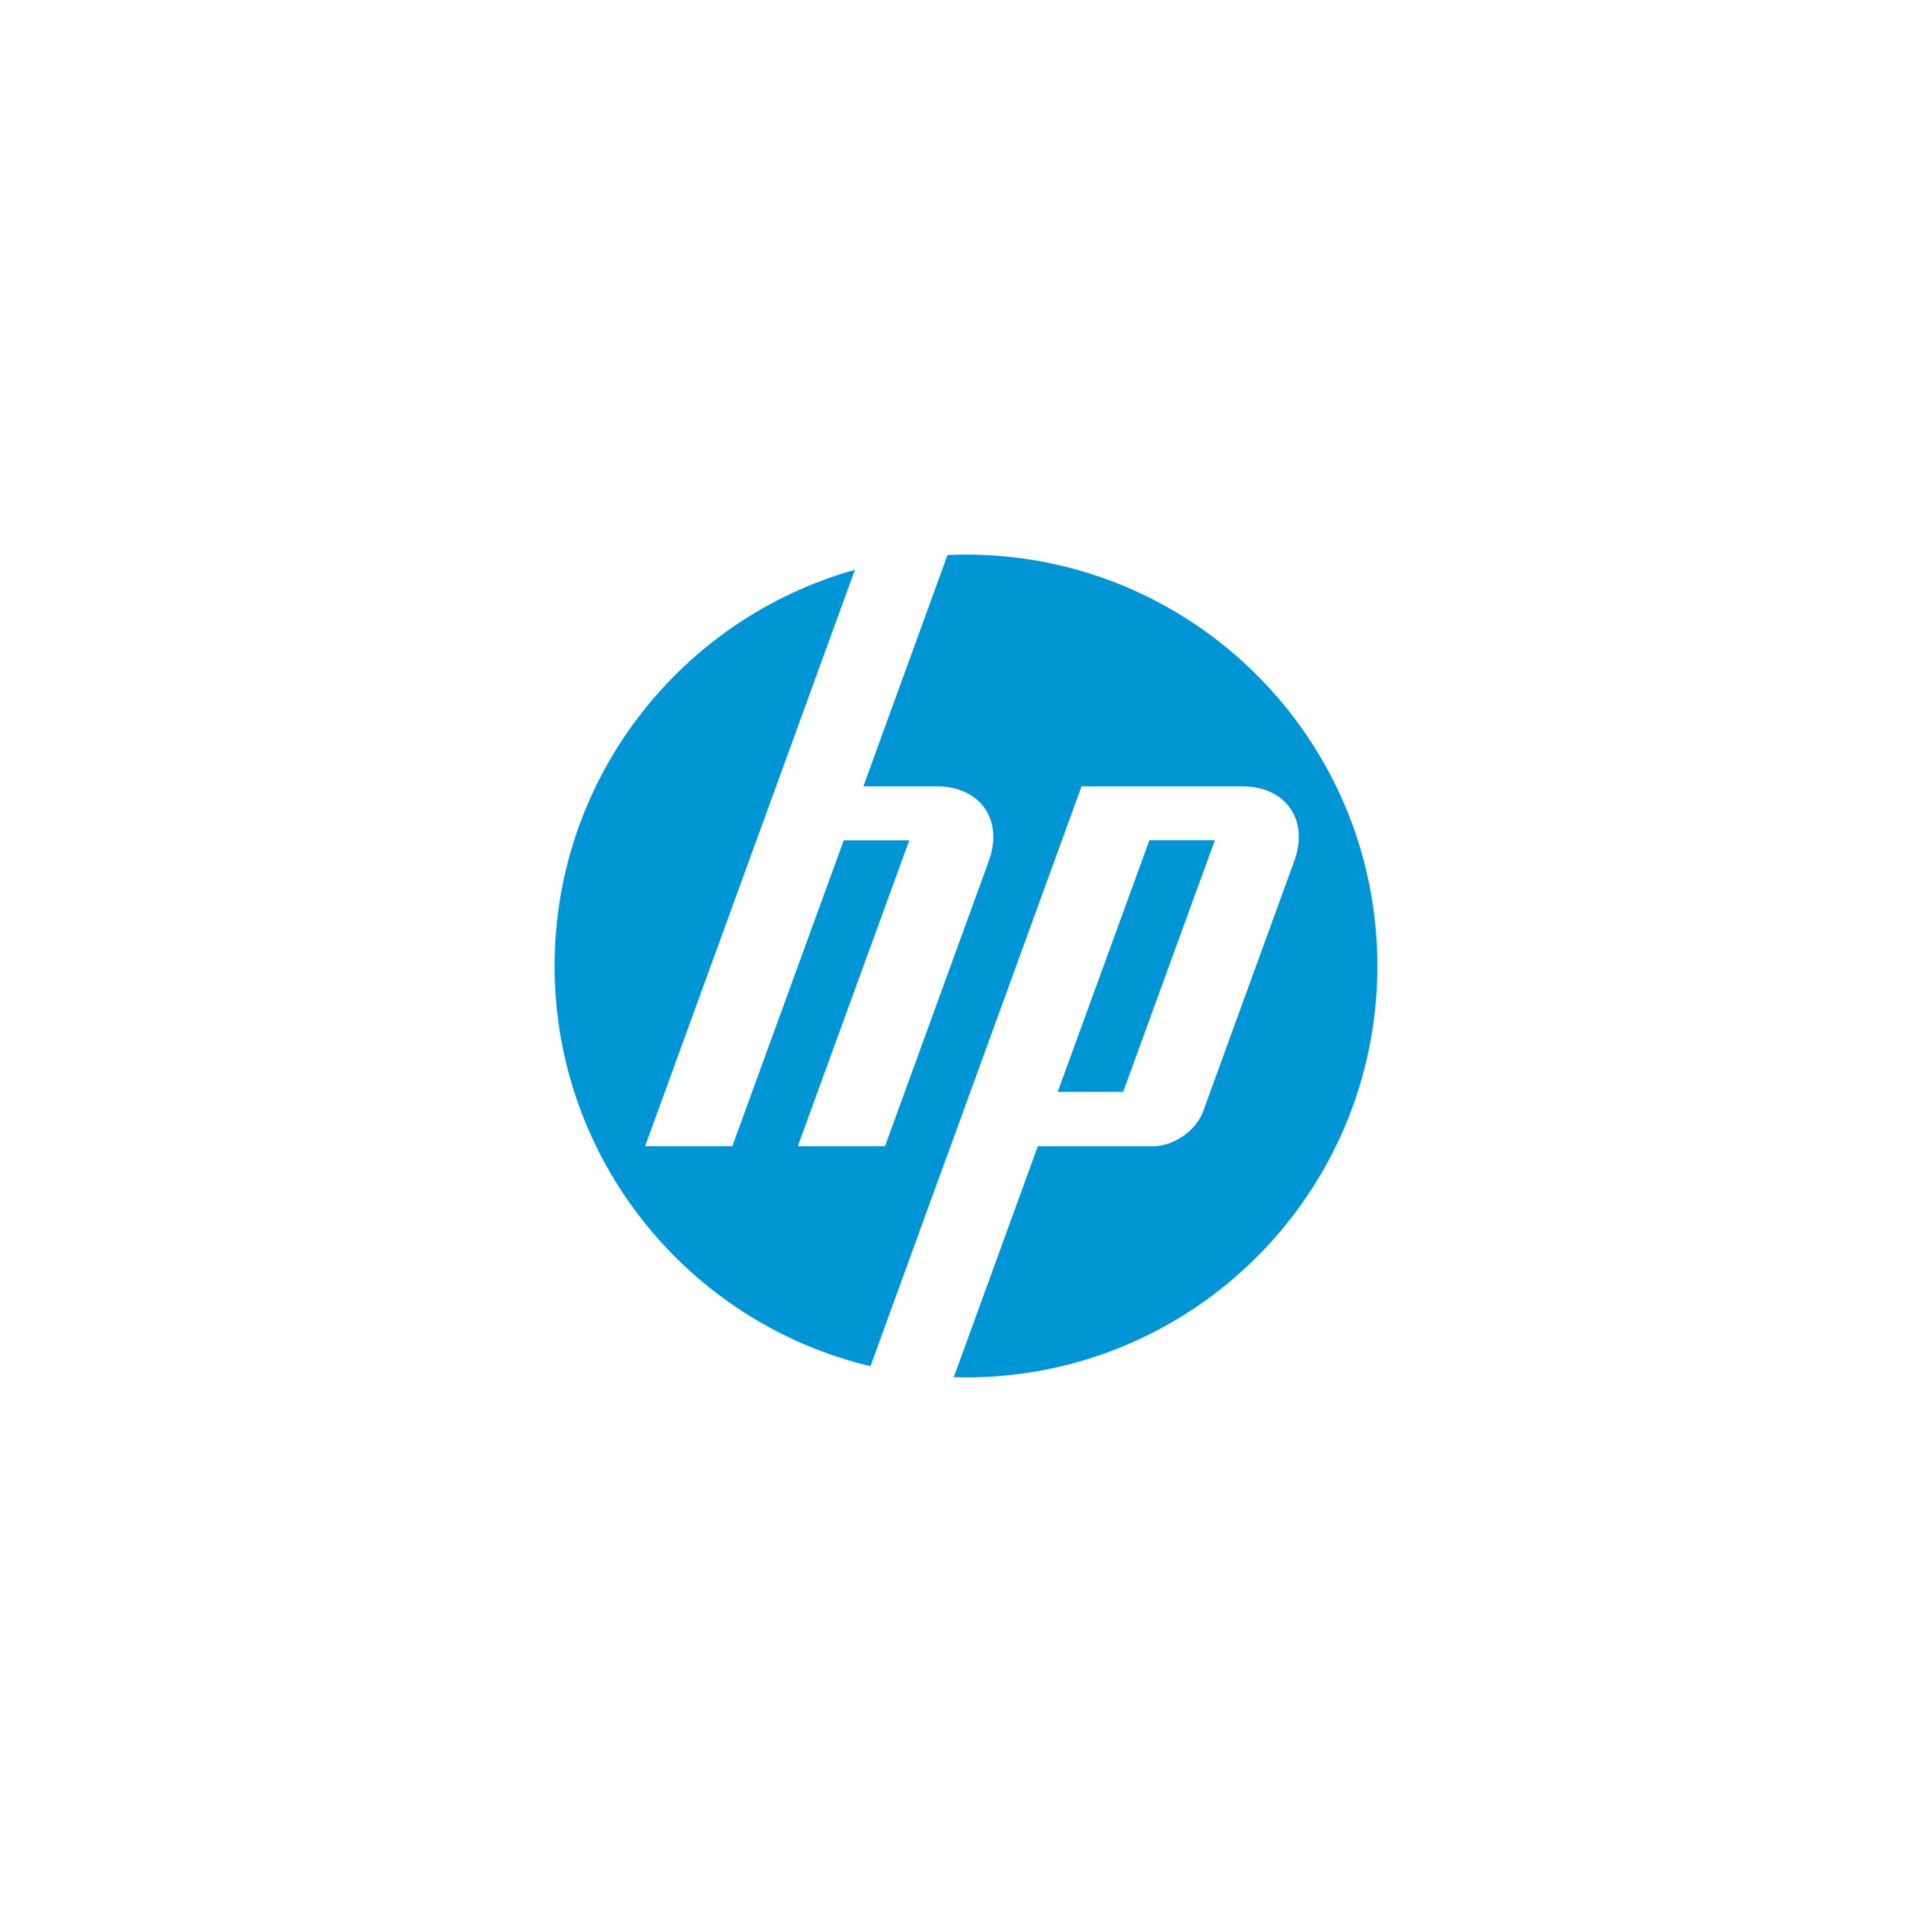 HP Snapshots - Papier photo - 10 x 13 cm - 265 g/m² - 25 feuilles